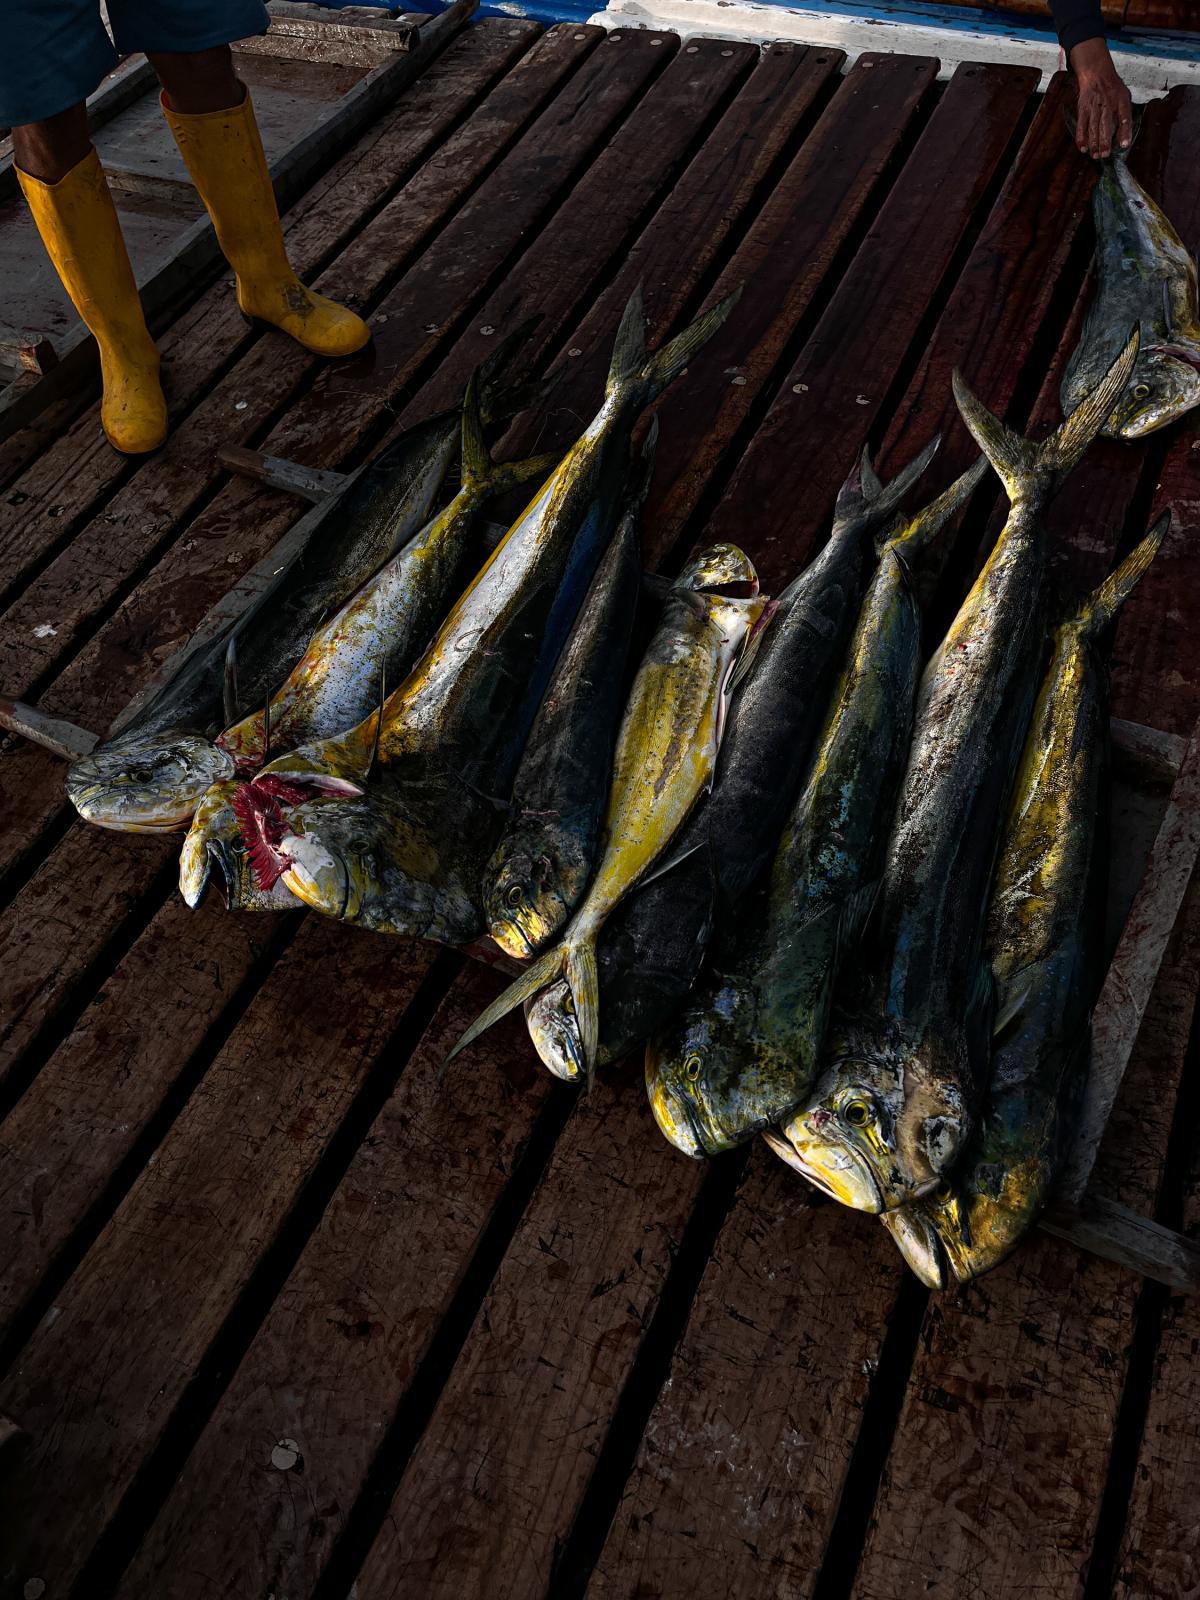 The struggle of Artisanal Fishing